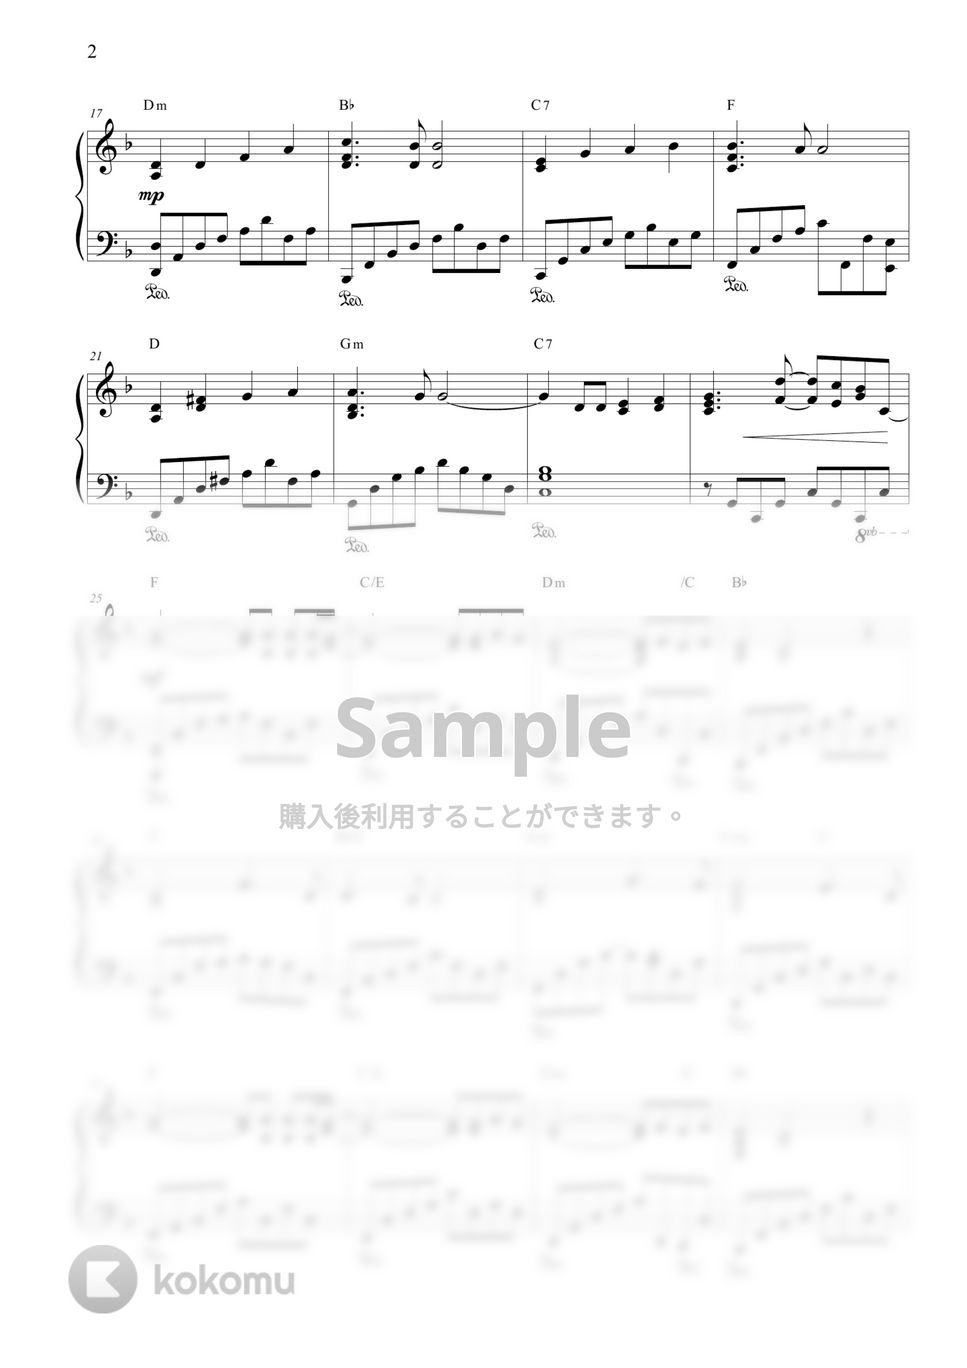 杉本 竜一 - Believe (卒業ソング) by CANACANA family